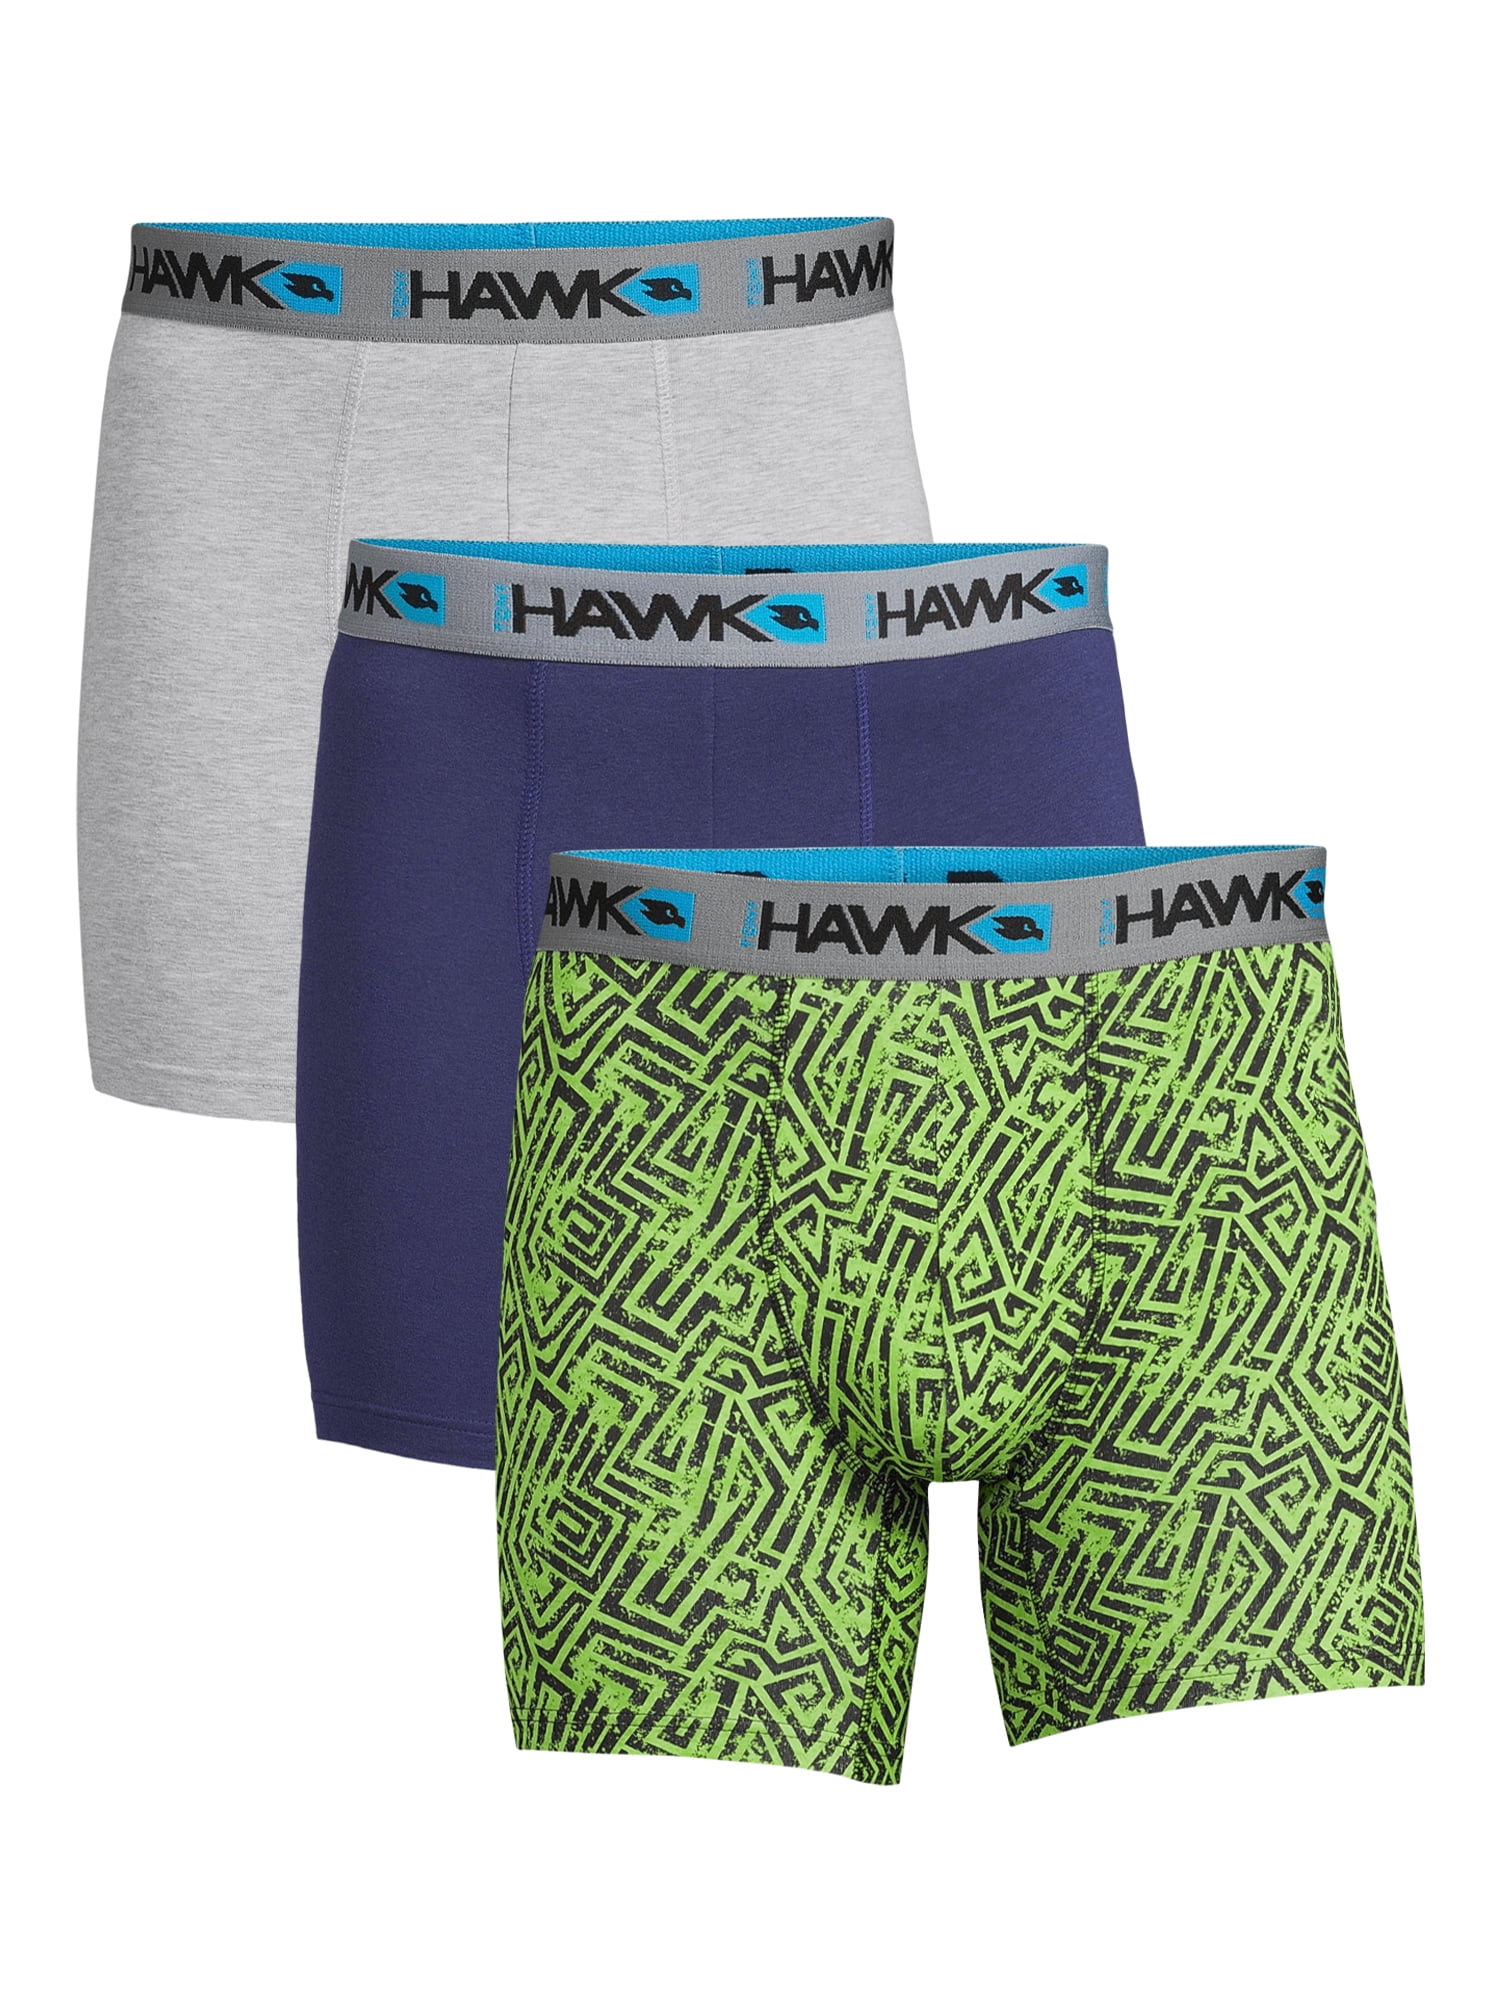 Tony Hawk 3-Pack Adult Mens Cotton Stretch Boxer Briefs, Sizes S-XL ...